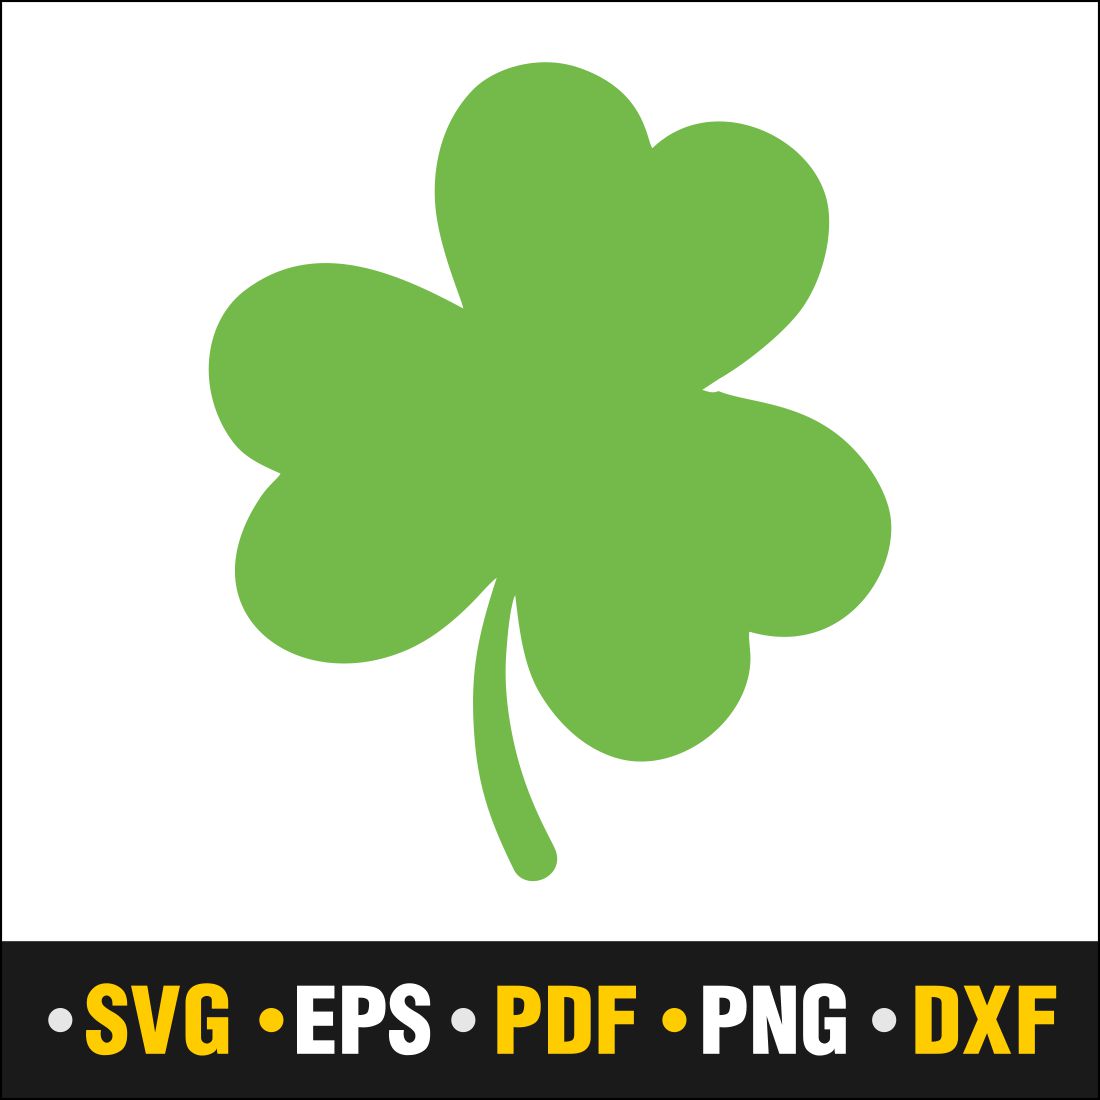 St Patrick\\\'s Day SVG Bundle, St Patrick\\\'s Dribble, Lucky SVG, St Patricks Day Rainbow, Shamrock, Cut File Cricut cover image.